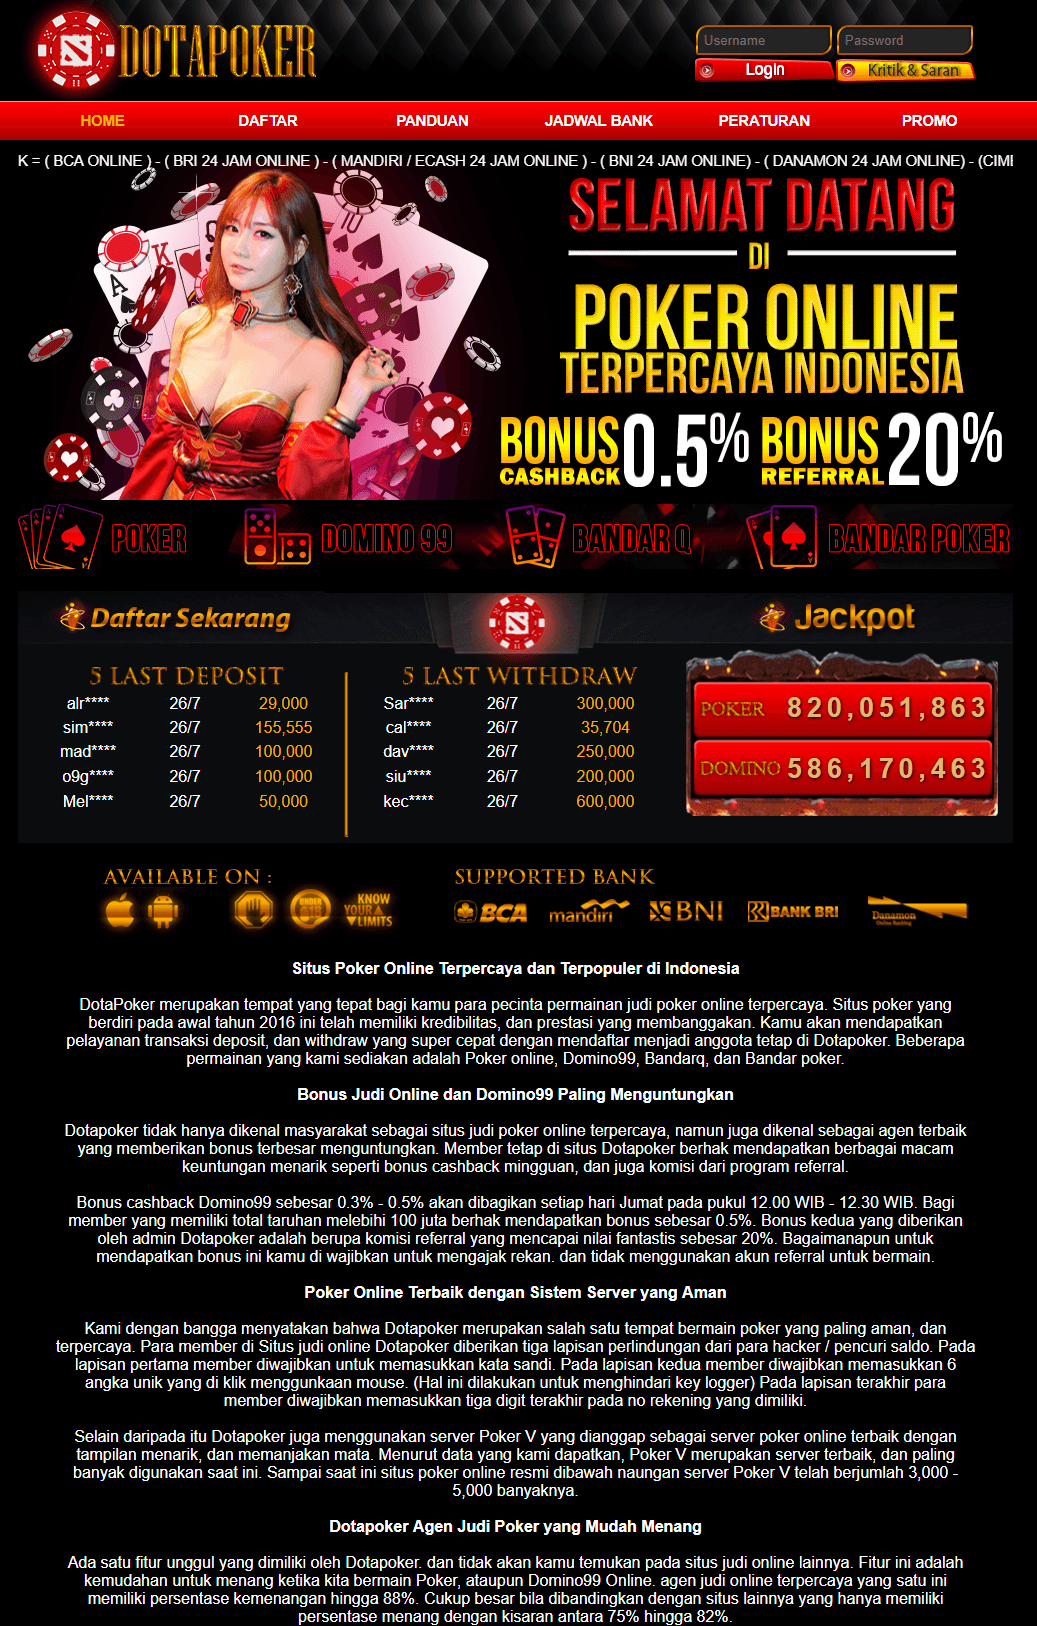 Dotapoker web agen taruhan poker domino99 online resmi asiaDotapoker web agen taruhan poker domino99 online resmi asia